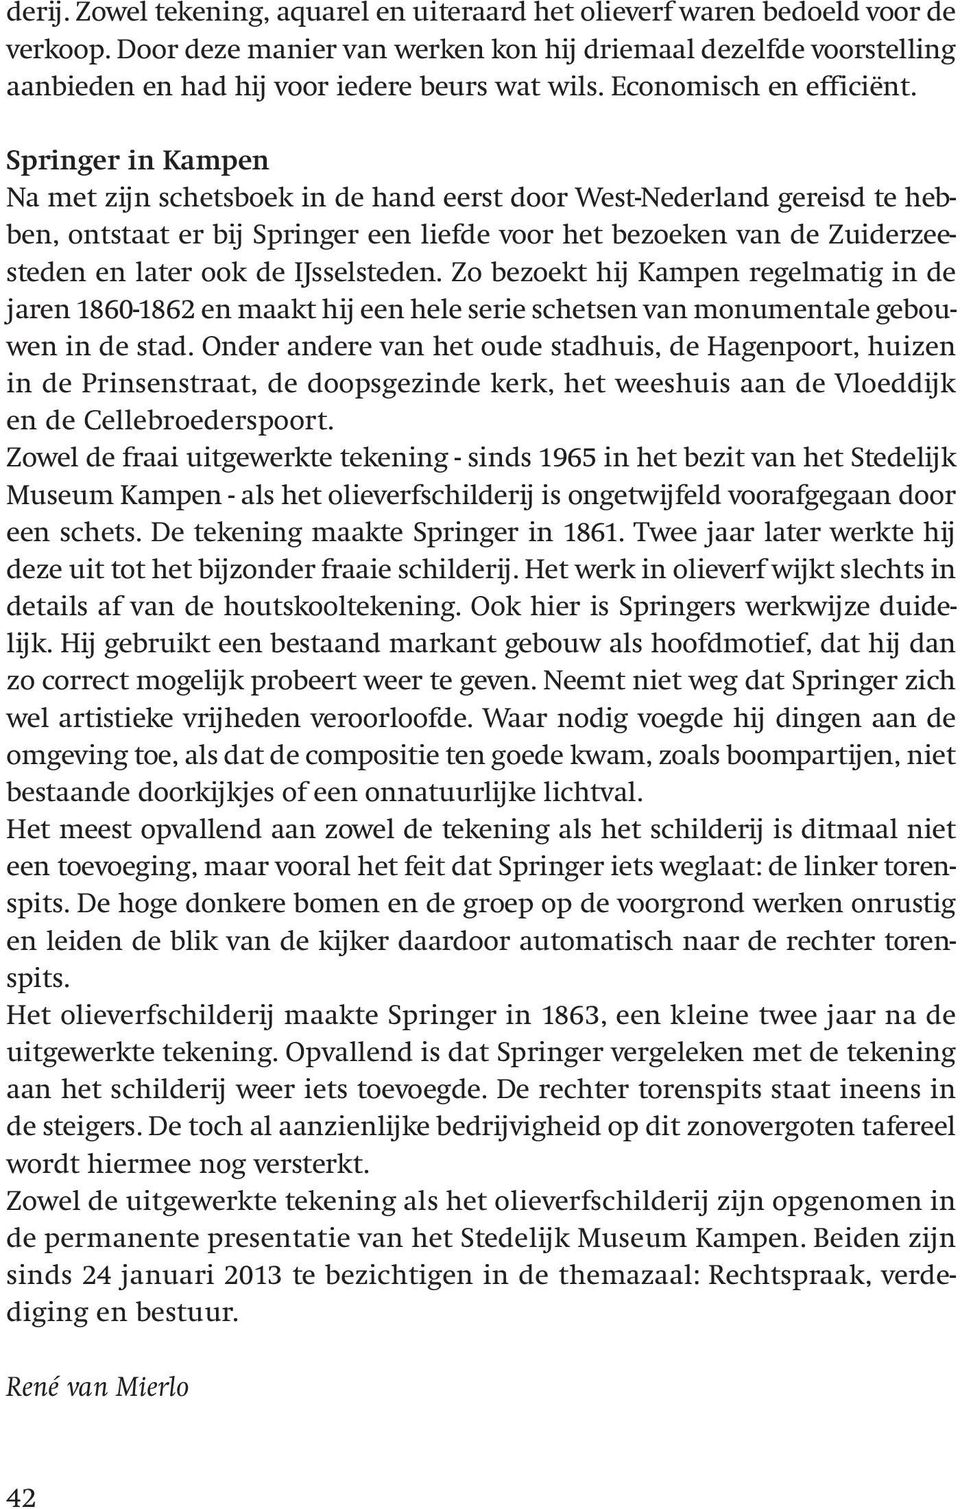 Springer in Kampen Na met zijn schetsboek in de hand eerst door West-Nederland gereisd te hebben, ontstaat er bij Springer een liefde voor het bezoeken van de Zuiderzee - steden en later ook de